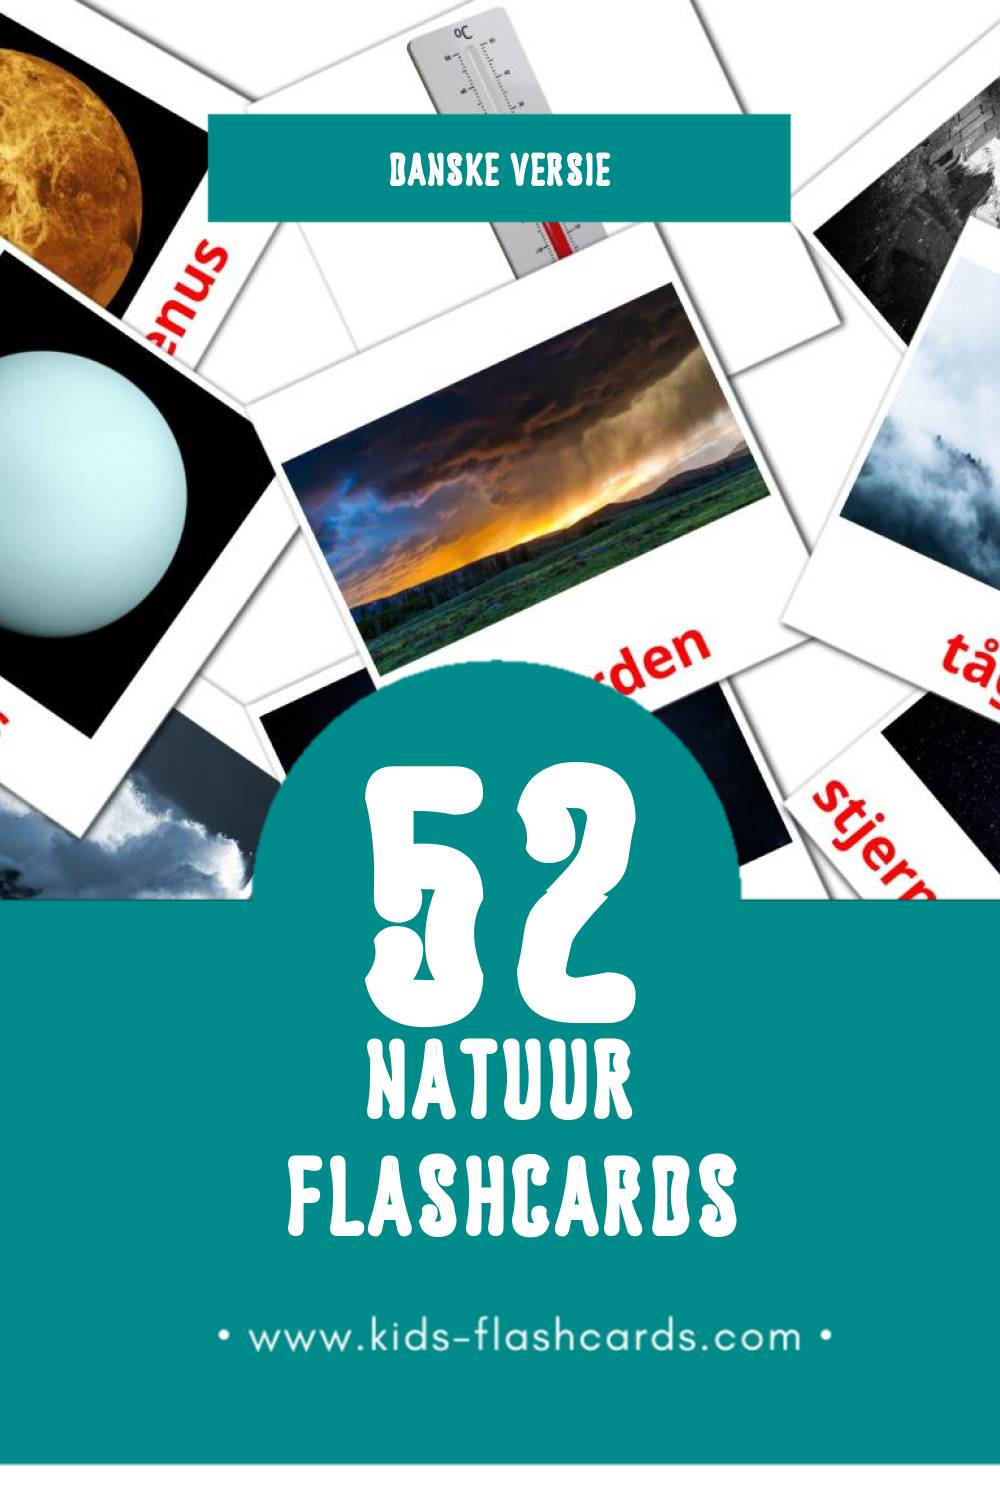 Visuele Natur Flashcards voor Kleuters (52 kaarten in het Dansk)